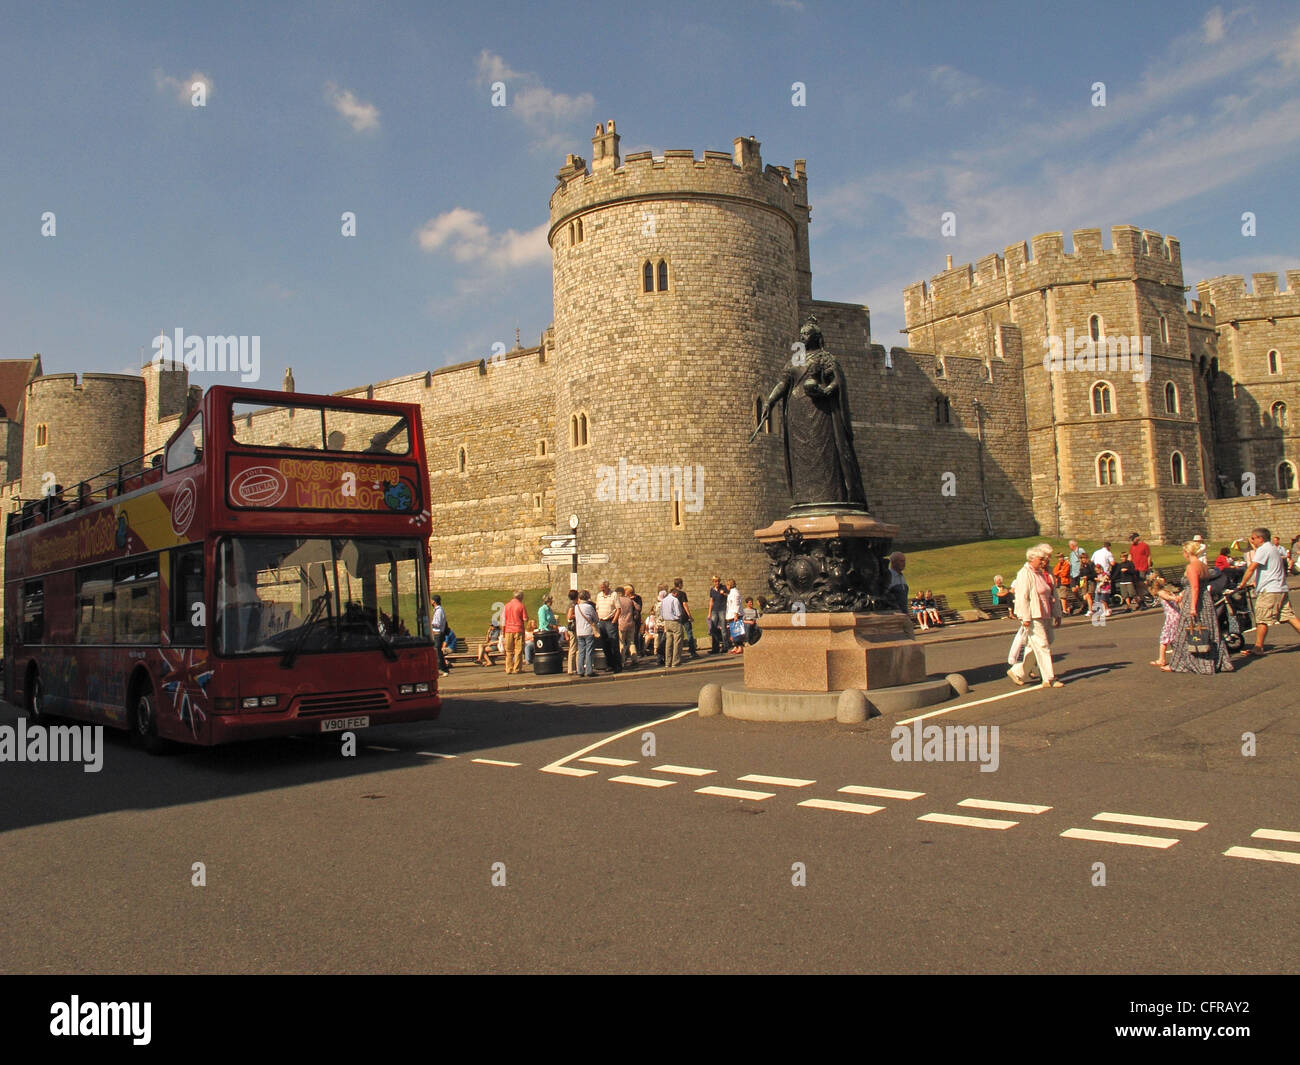 El castillo de Windsor, visto desde la ciudad de Windsor Foto de stock